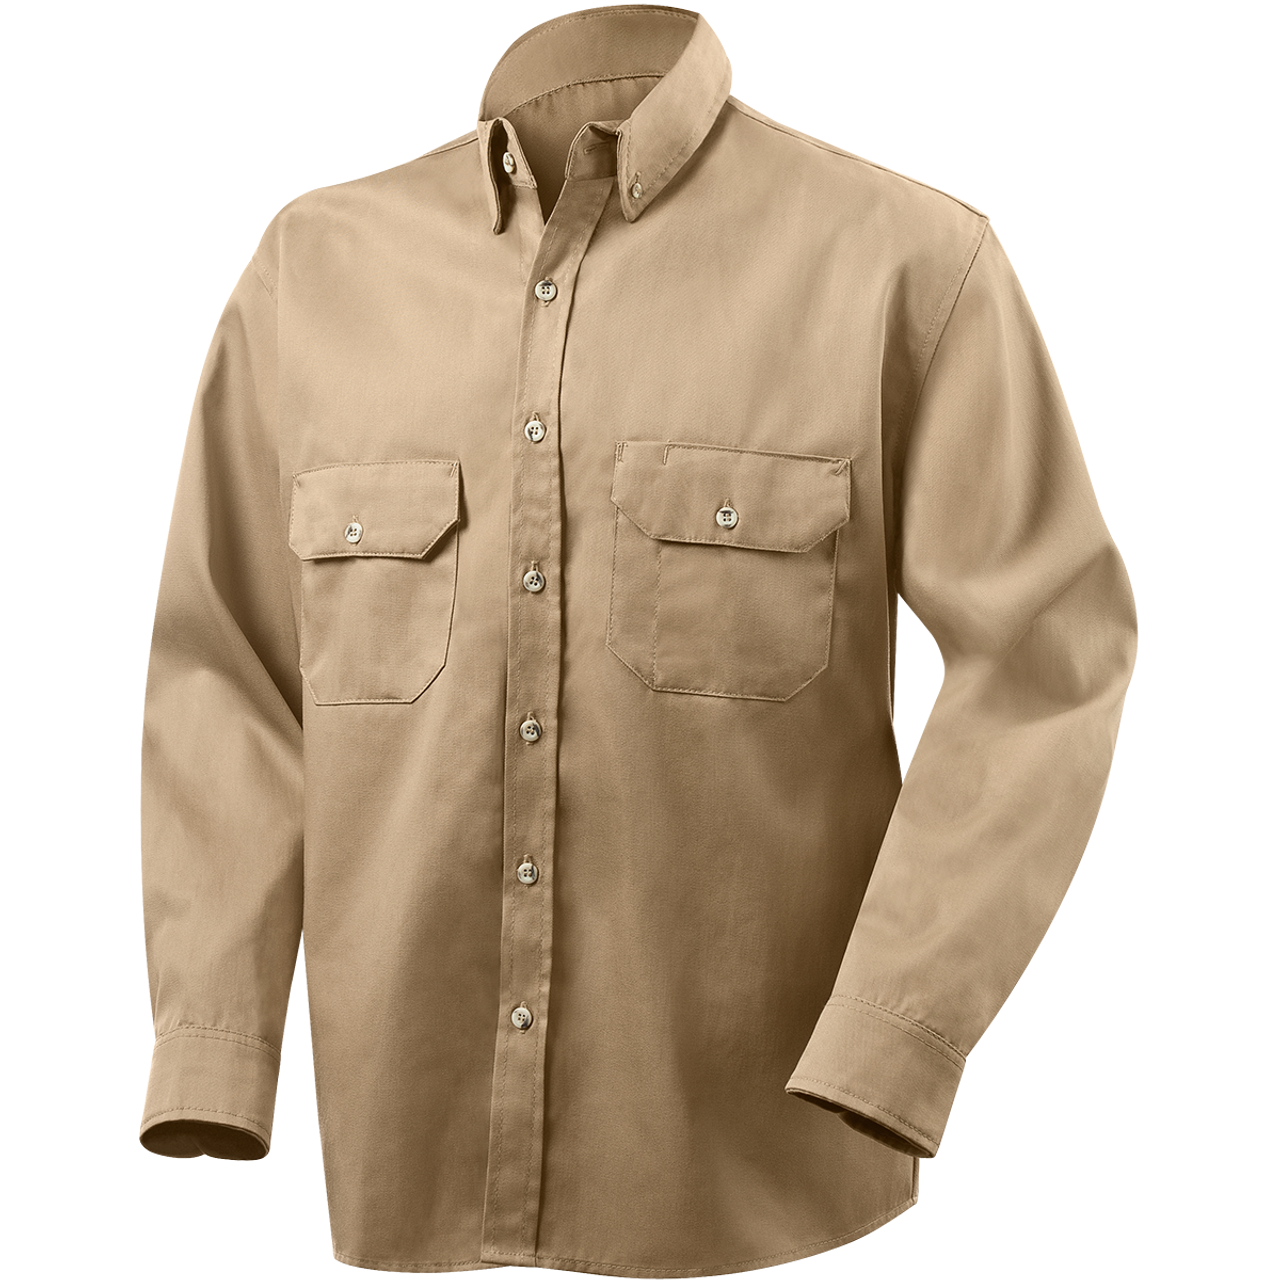 Steiner Arc ProTech 7 oz Cotton/Nylon Blend Arc Resistant Shirts, NFPA ...